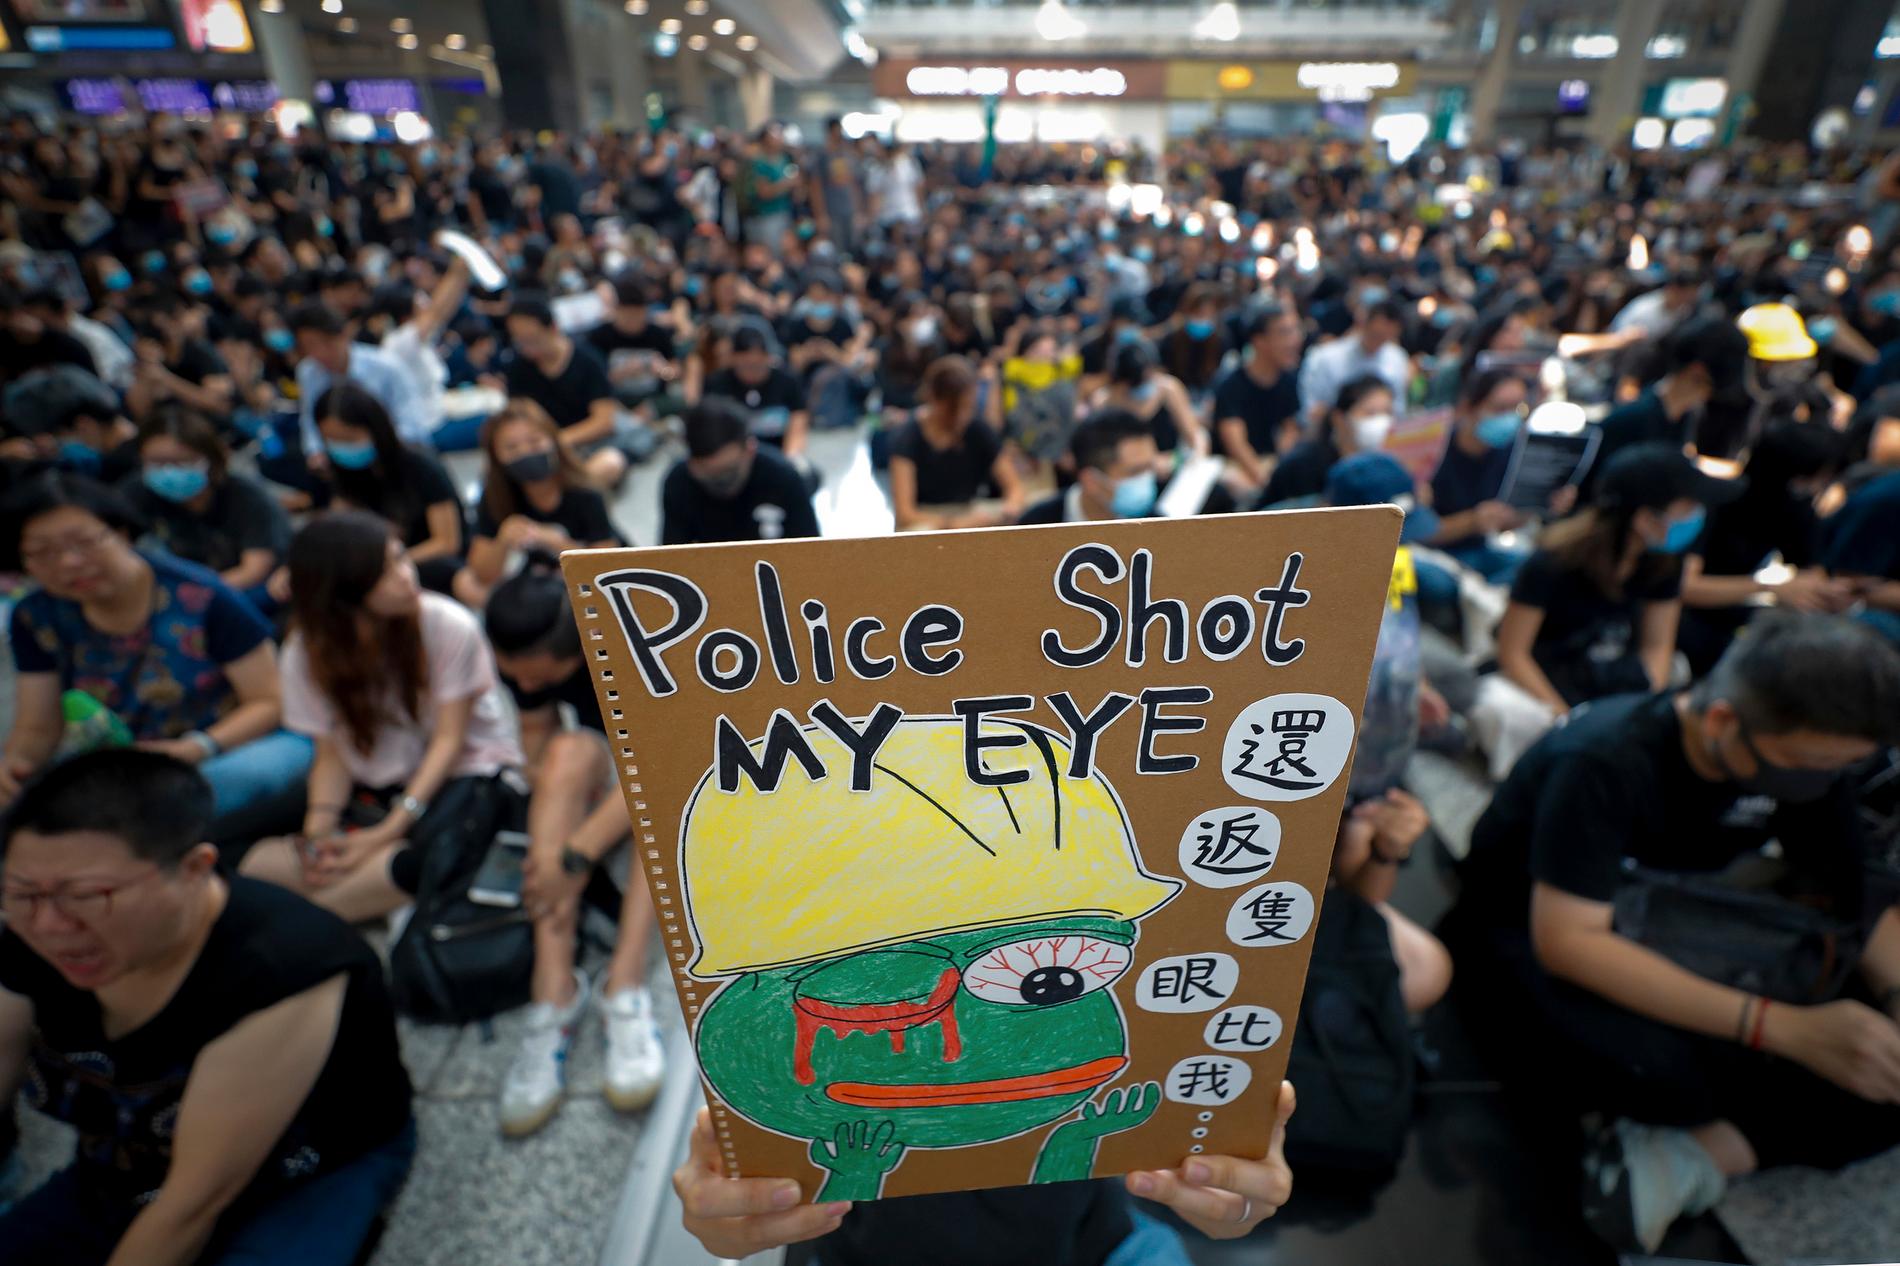 Helgens protester på flygplatsen i Hongkong markerar slutet på den nionde veckan av folkligt uppror i den asiatiska finansmetropolen. Demonstrationerna startade som protester mot ett förslag om en ny utlämningslag, men har utvecklats till att handla om mycket mer än så.